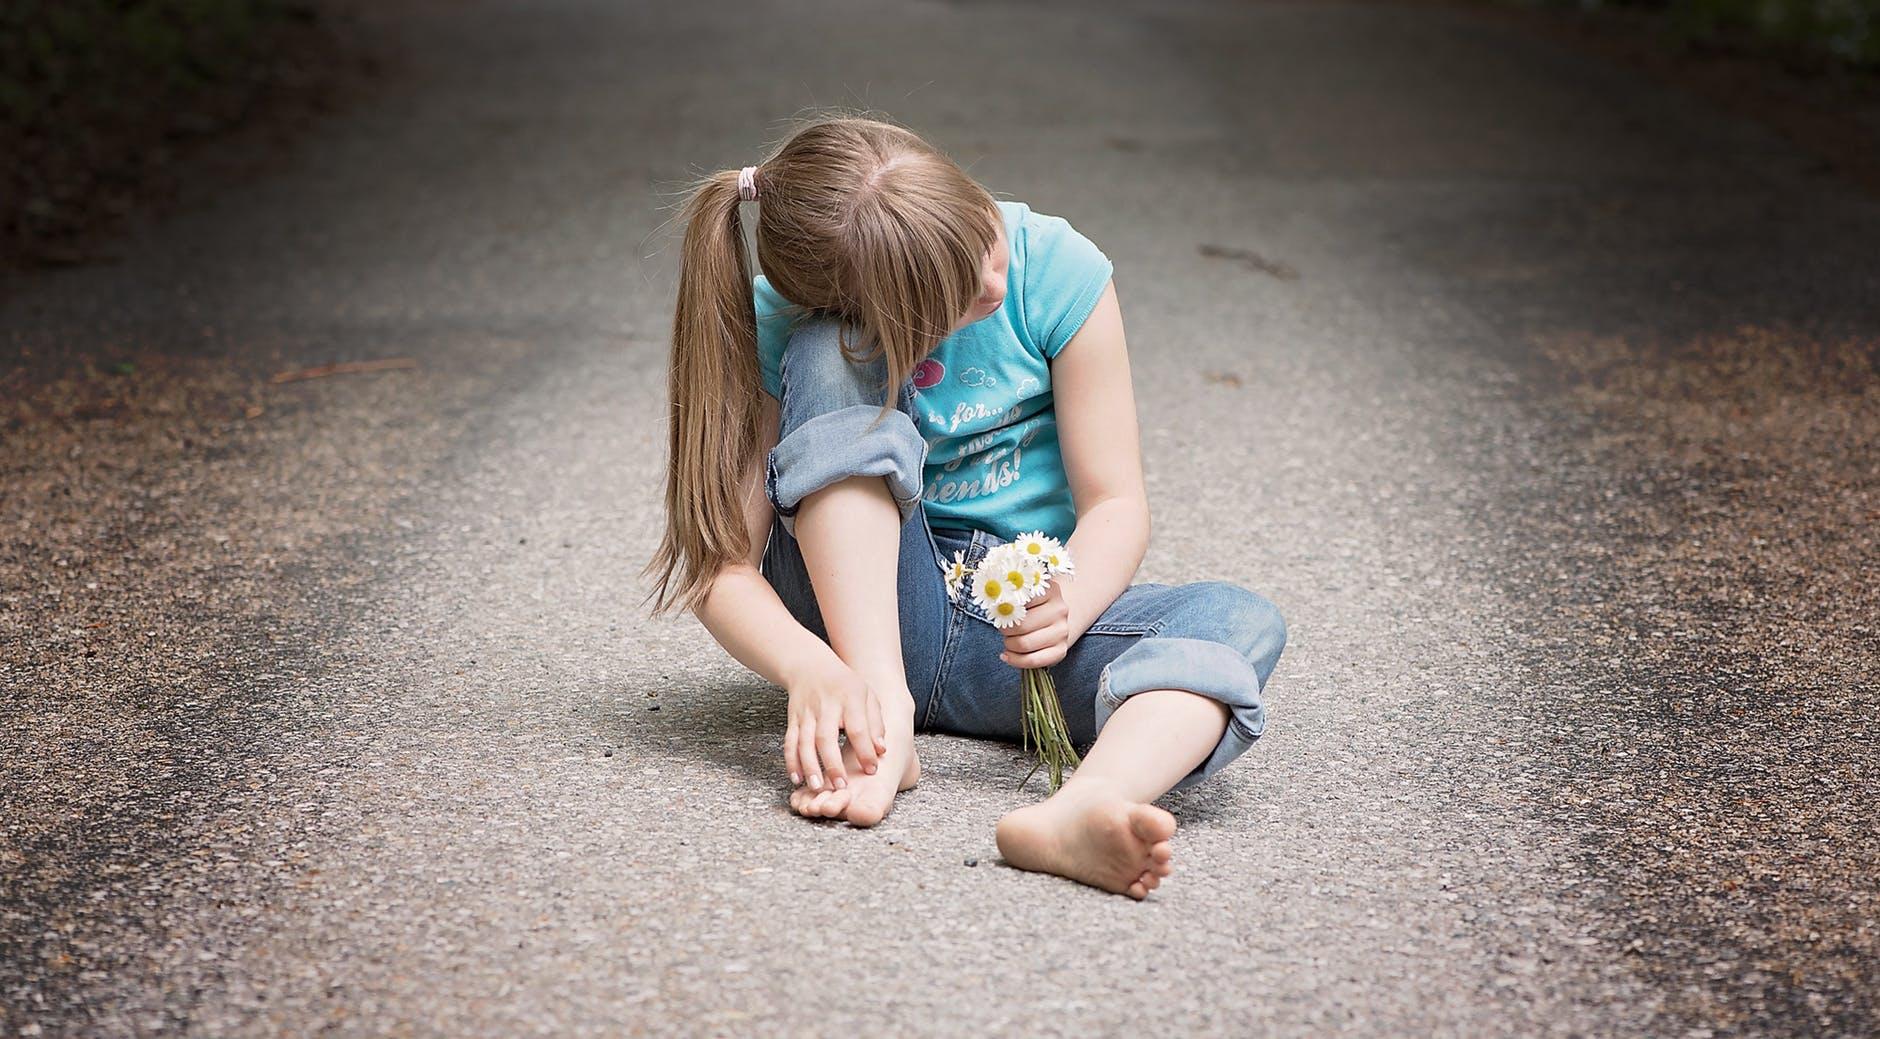 Djeca koja kriju probleme mogu razviti opasnu naviku